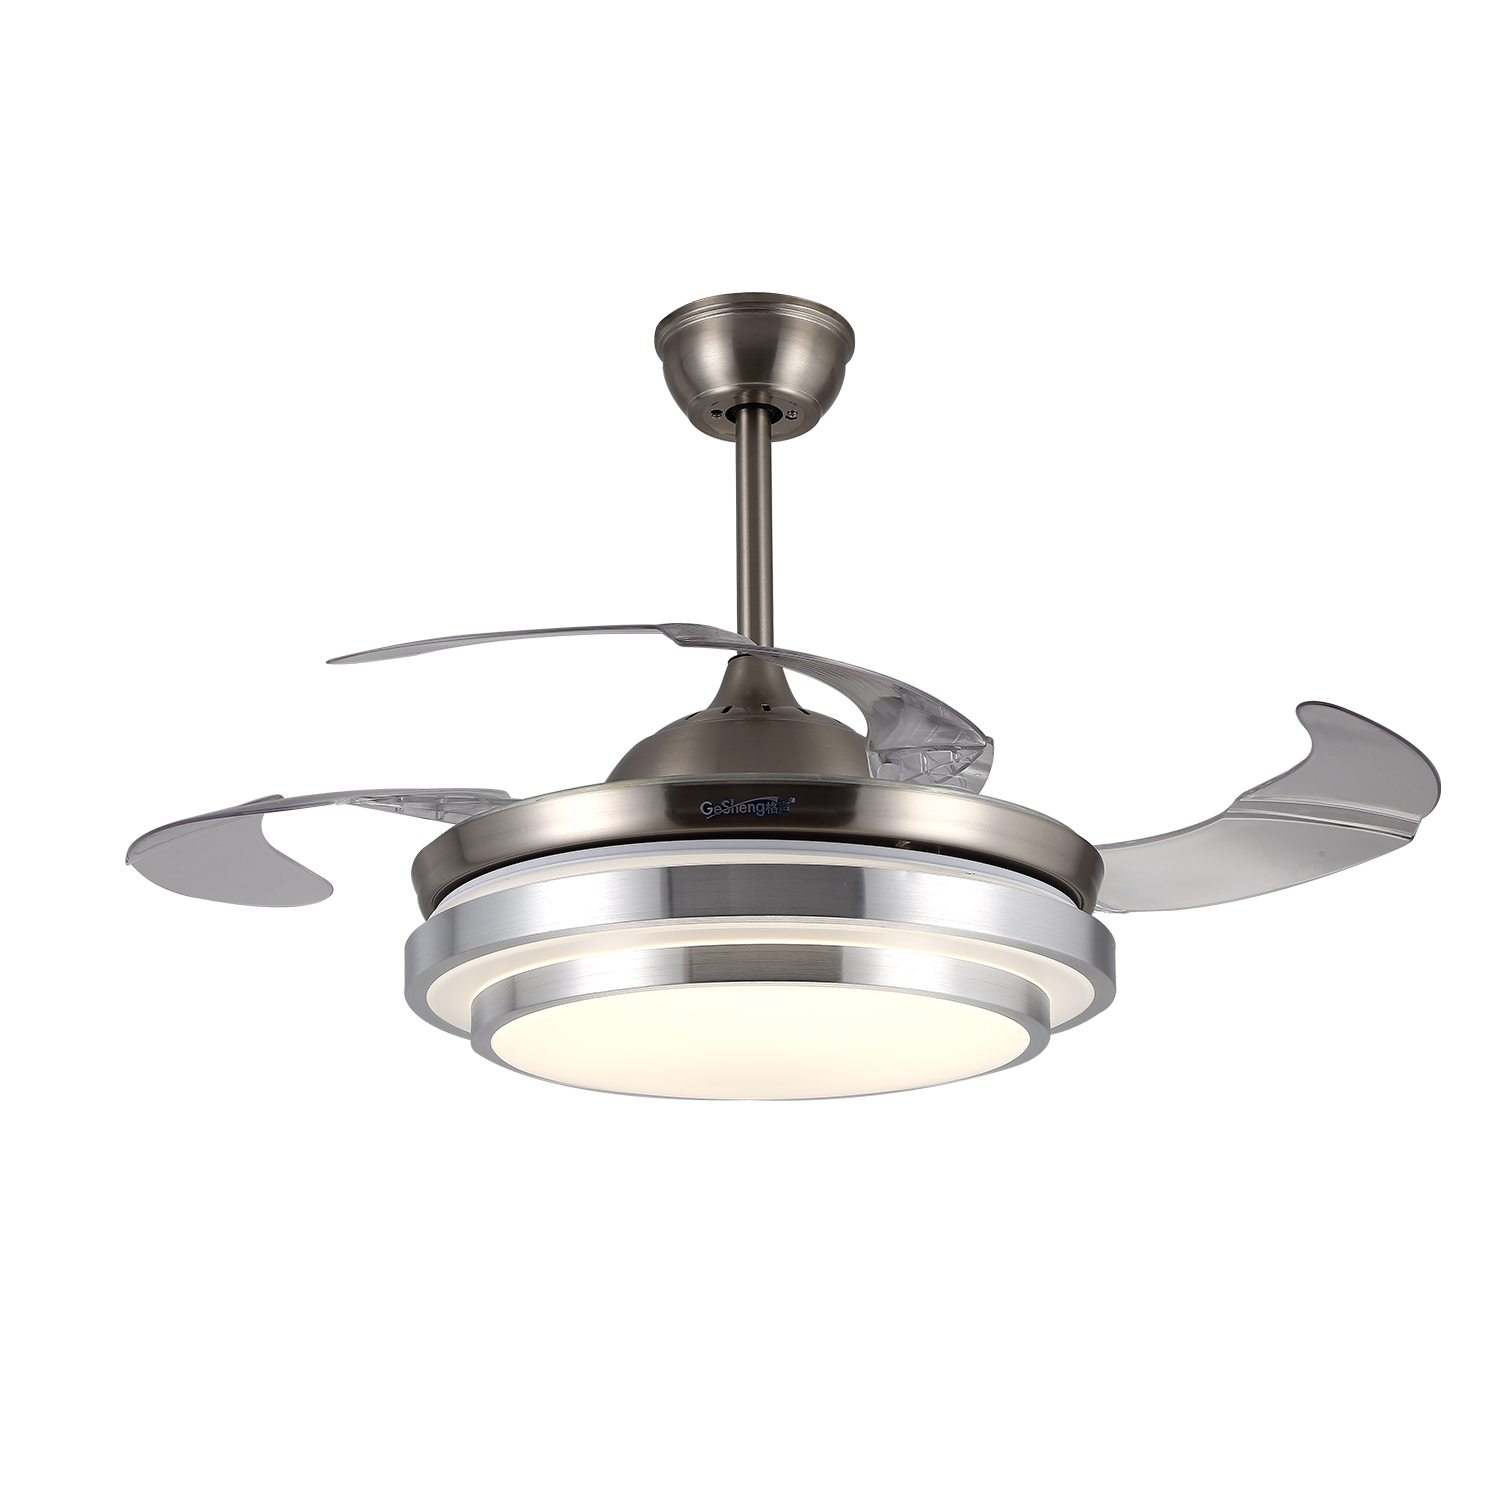 ទំនើប 42 អ៊ីញ តំលៃថោក 3 ABS Invisible Hidden Blades Dc Bldc Remote Control Fan Ceiling Retractable Fan with LED Light